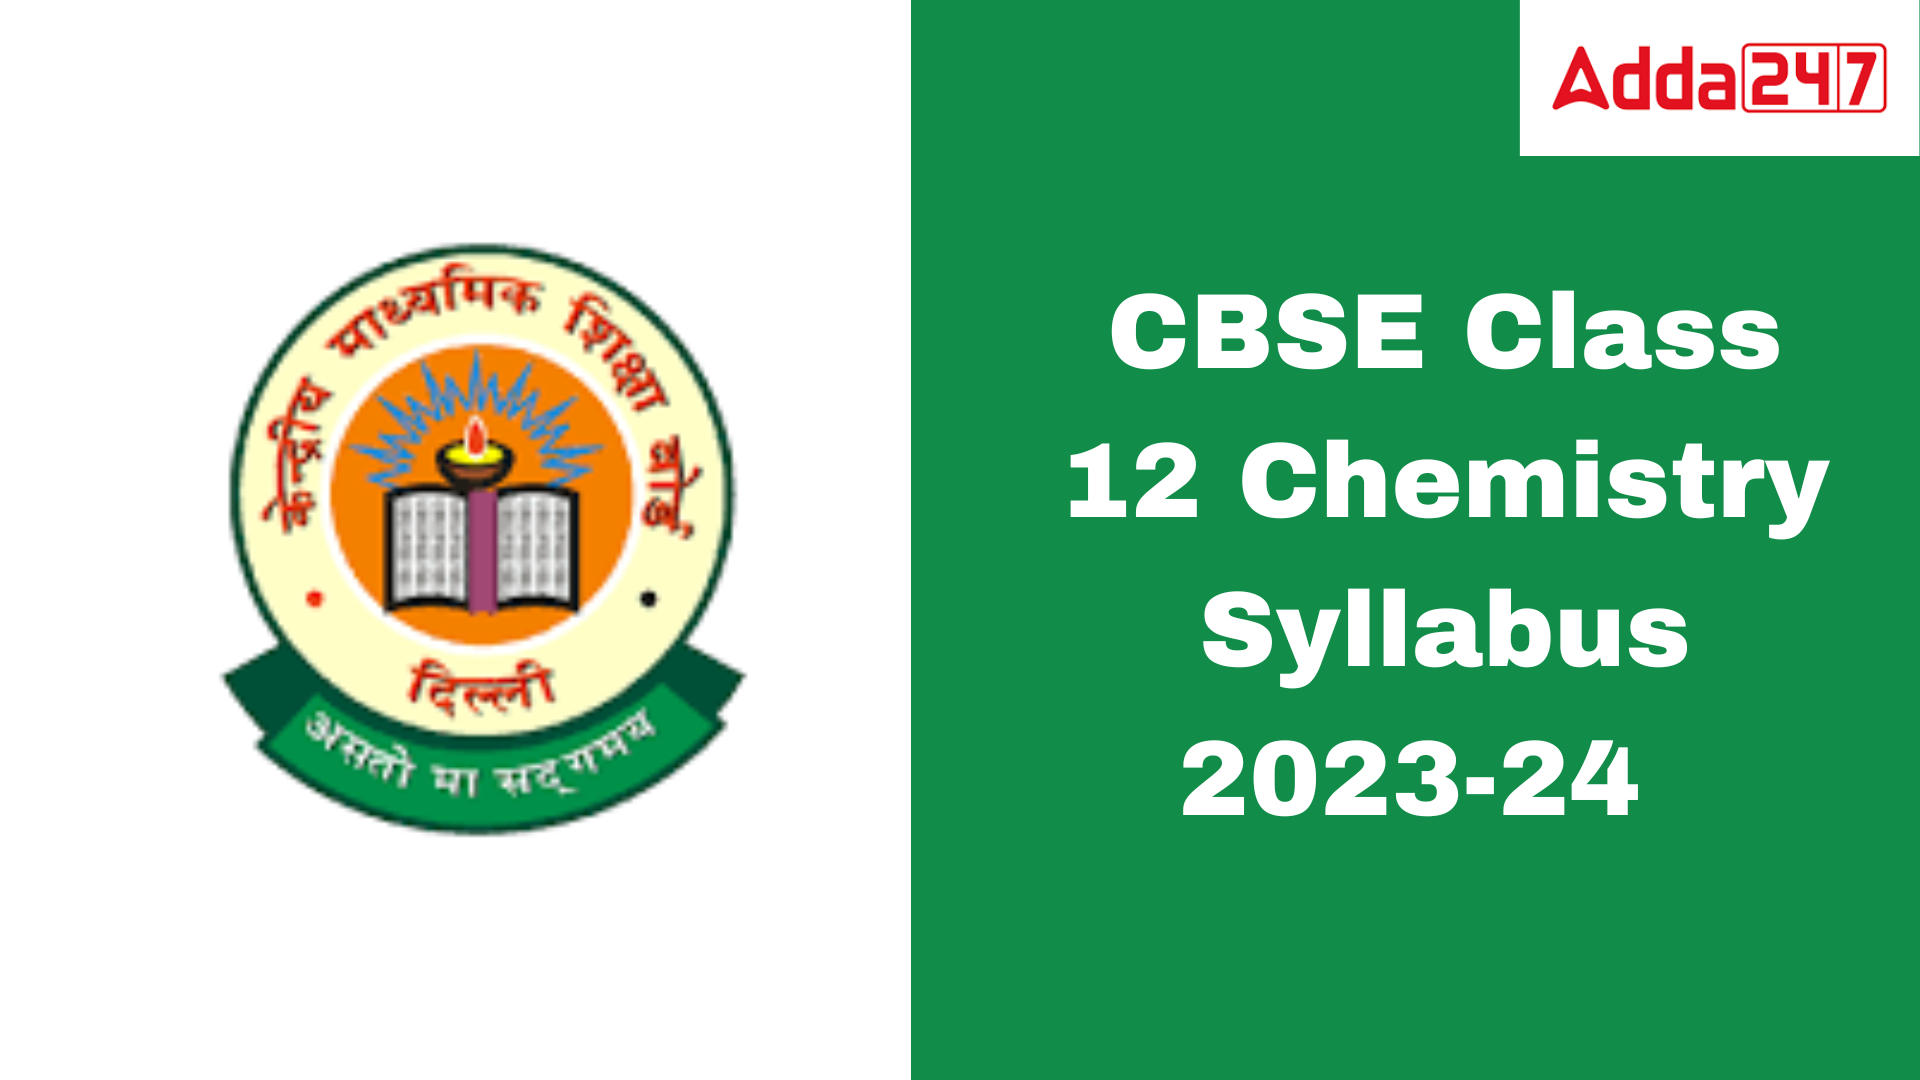 CBSE Class 12 Chemistry Syllabus 2023-24